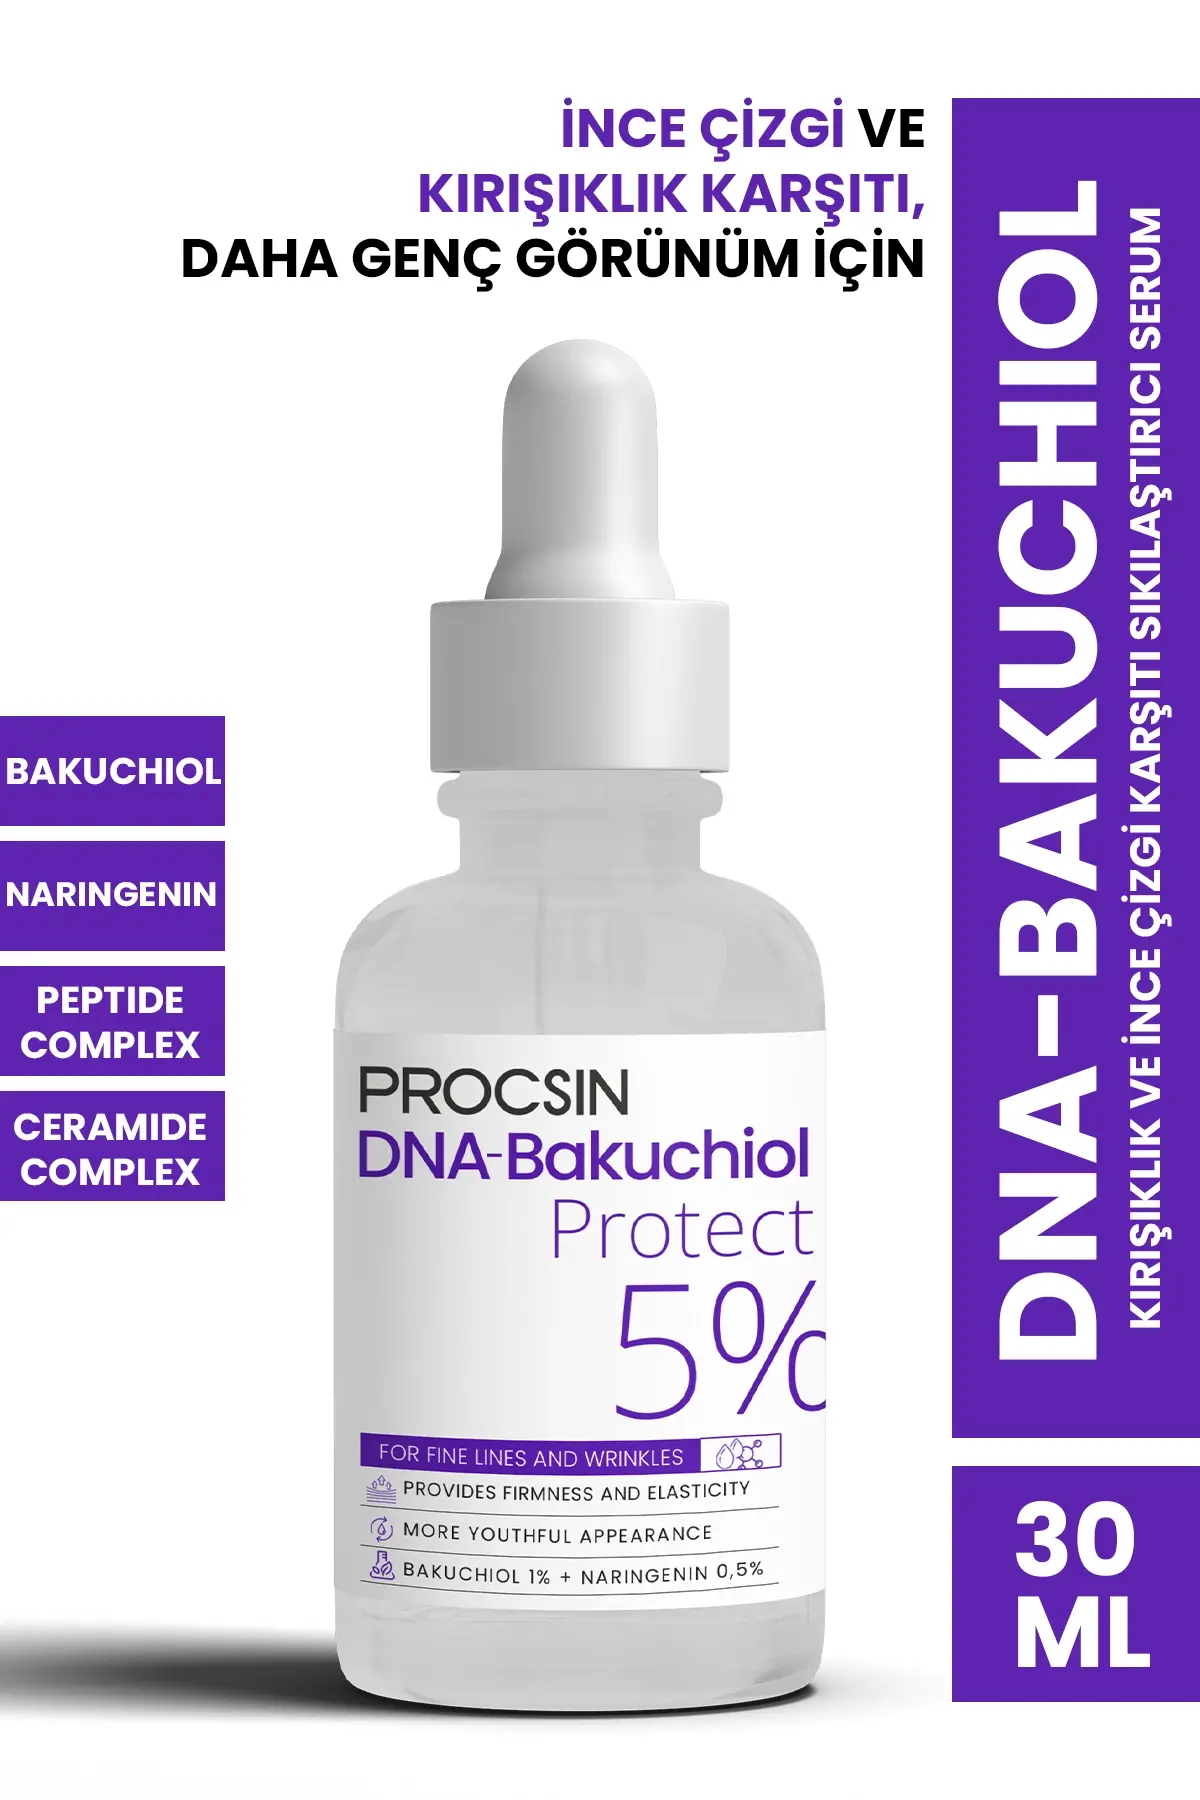 PROCSIN DNA-Bakuchiol Kırışıklık ve İnce Çizgi Karşıtı Sıkılaştırıcı Serum 30 ML - 1